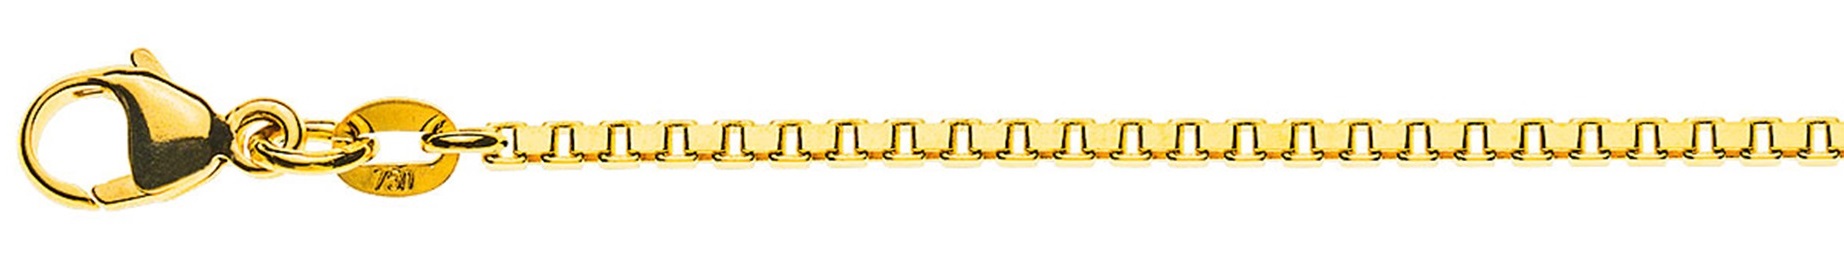 AURONOS Prestige Halskette Gelbgold 18K Venezianerkette diamantiert 45cm 1.6mm